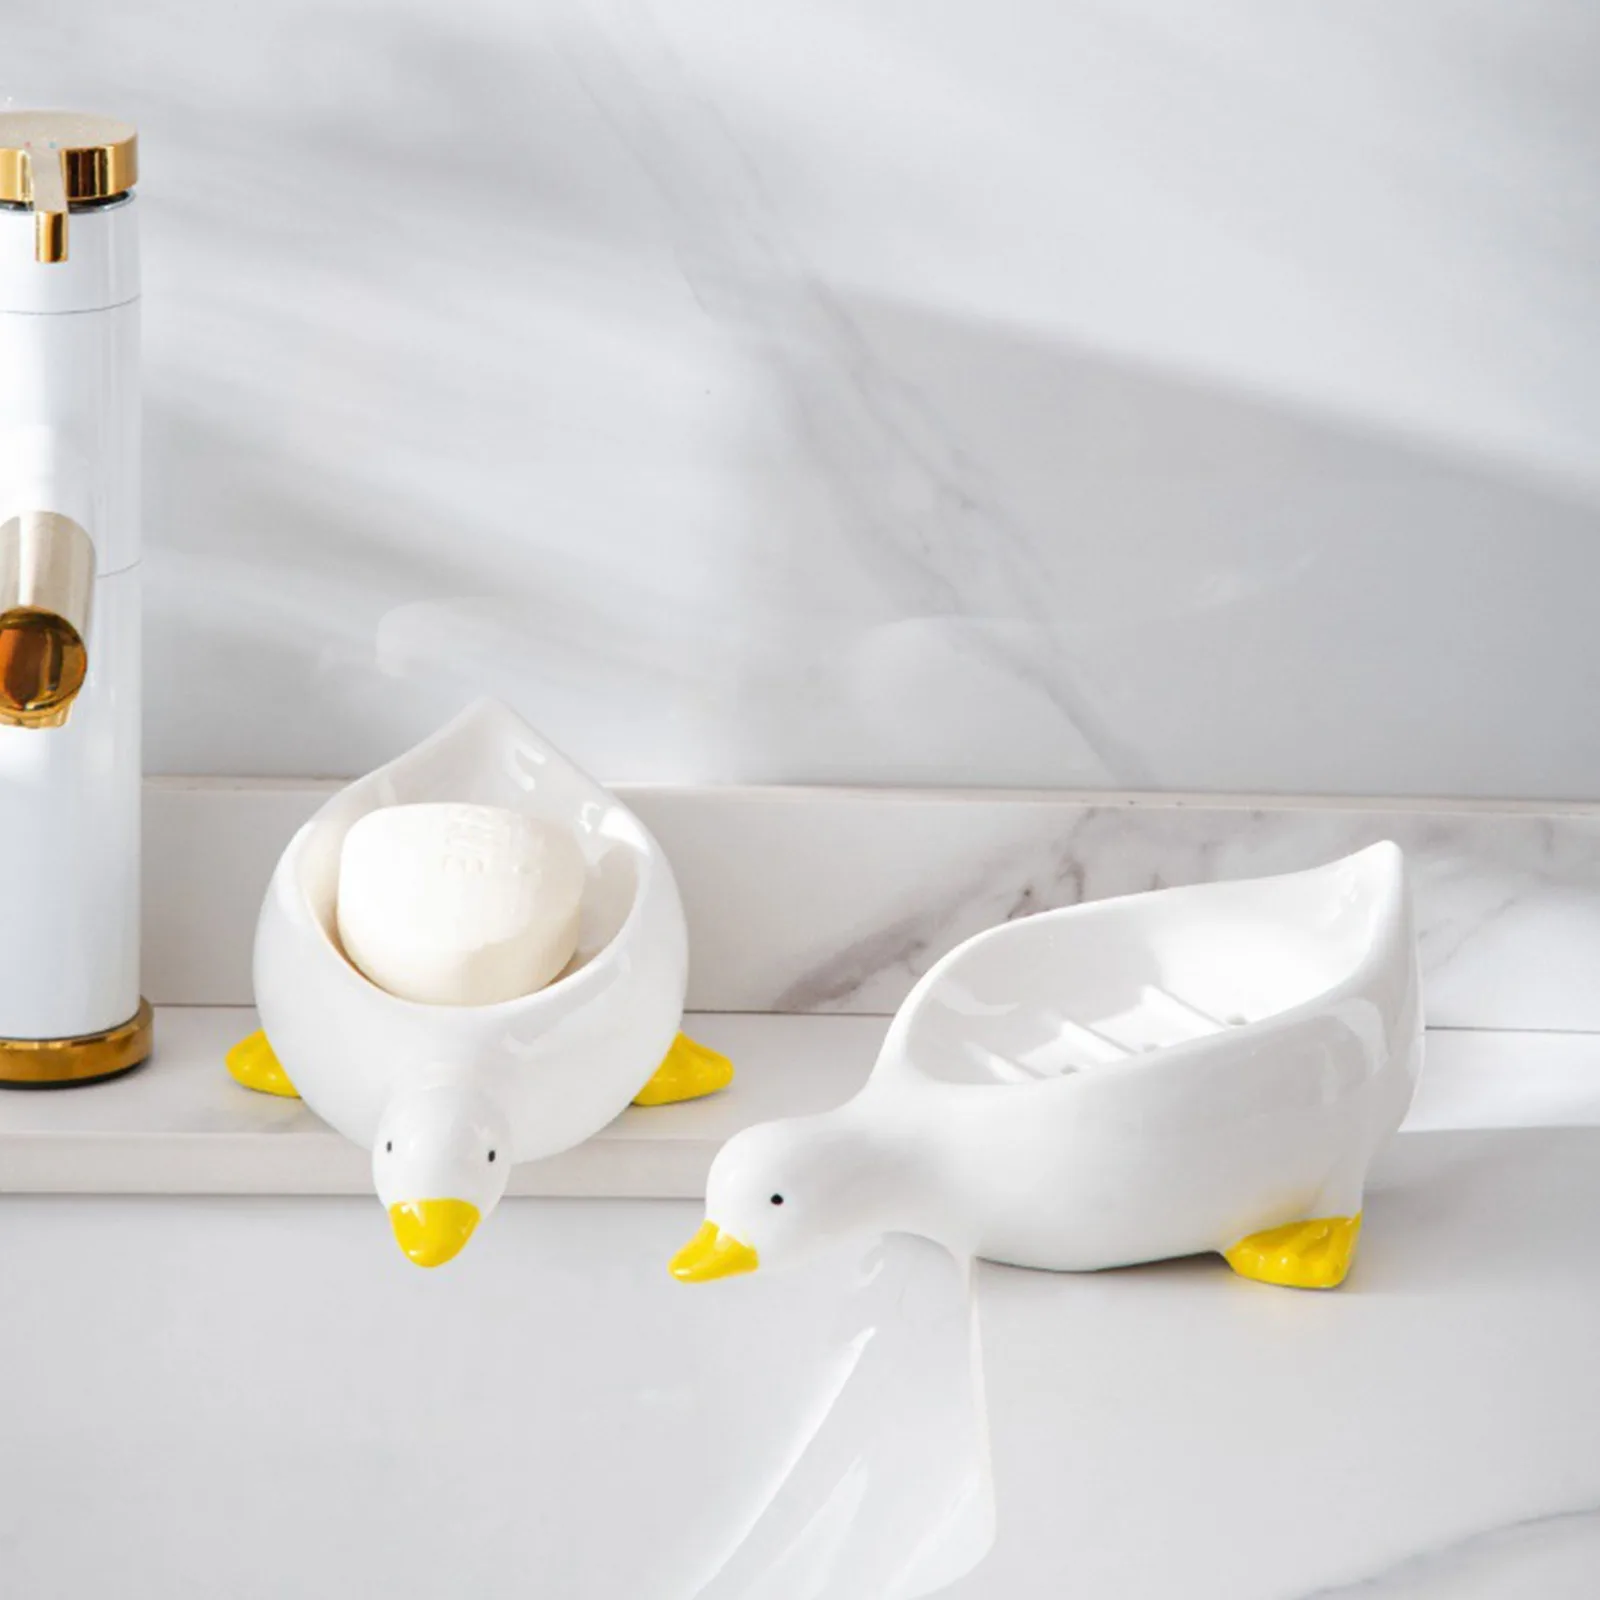 מגש ניקוז לאחסון סבון בעיצוב ברווז חמוד